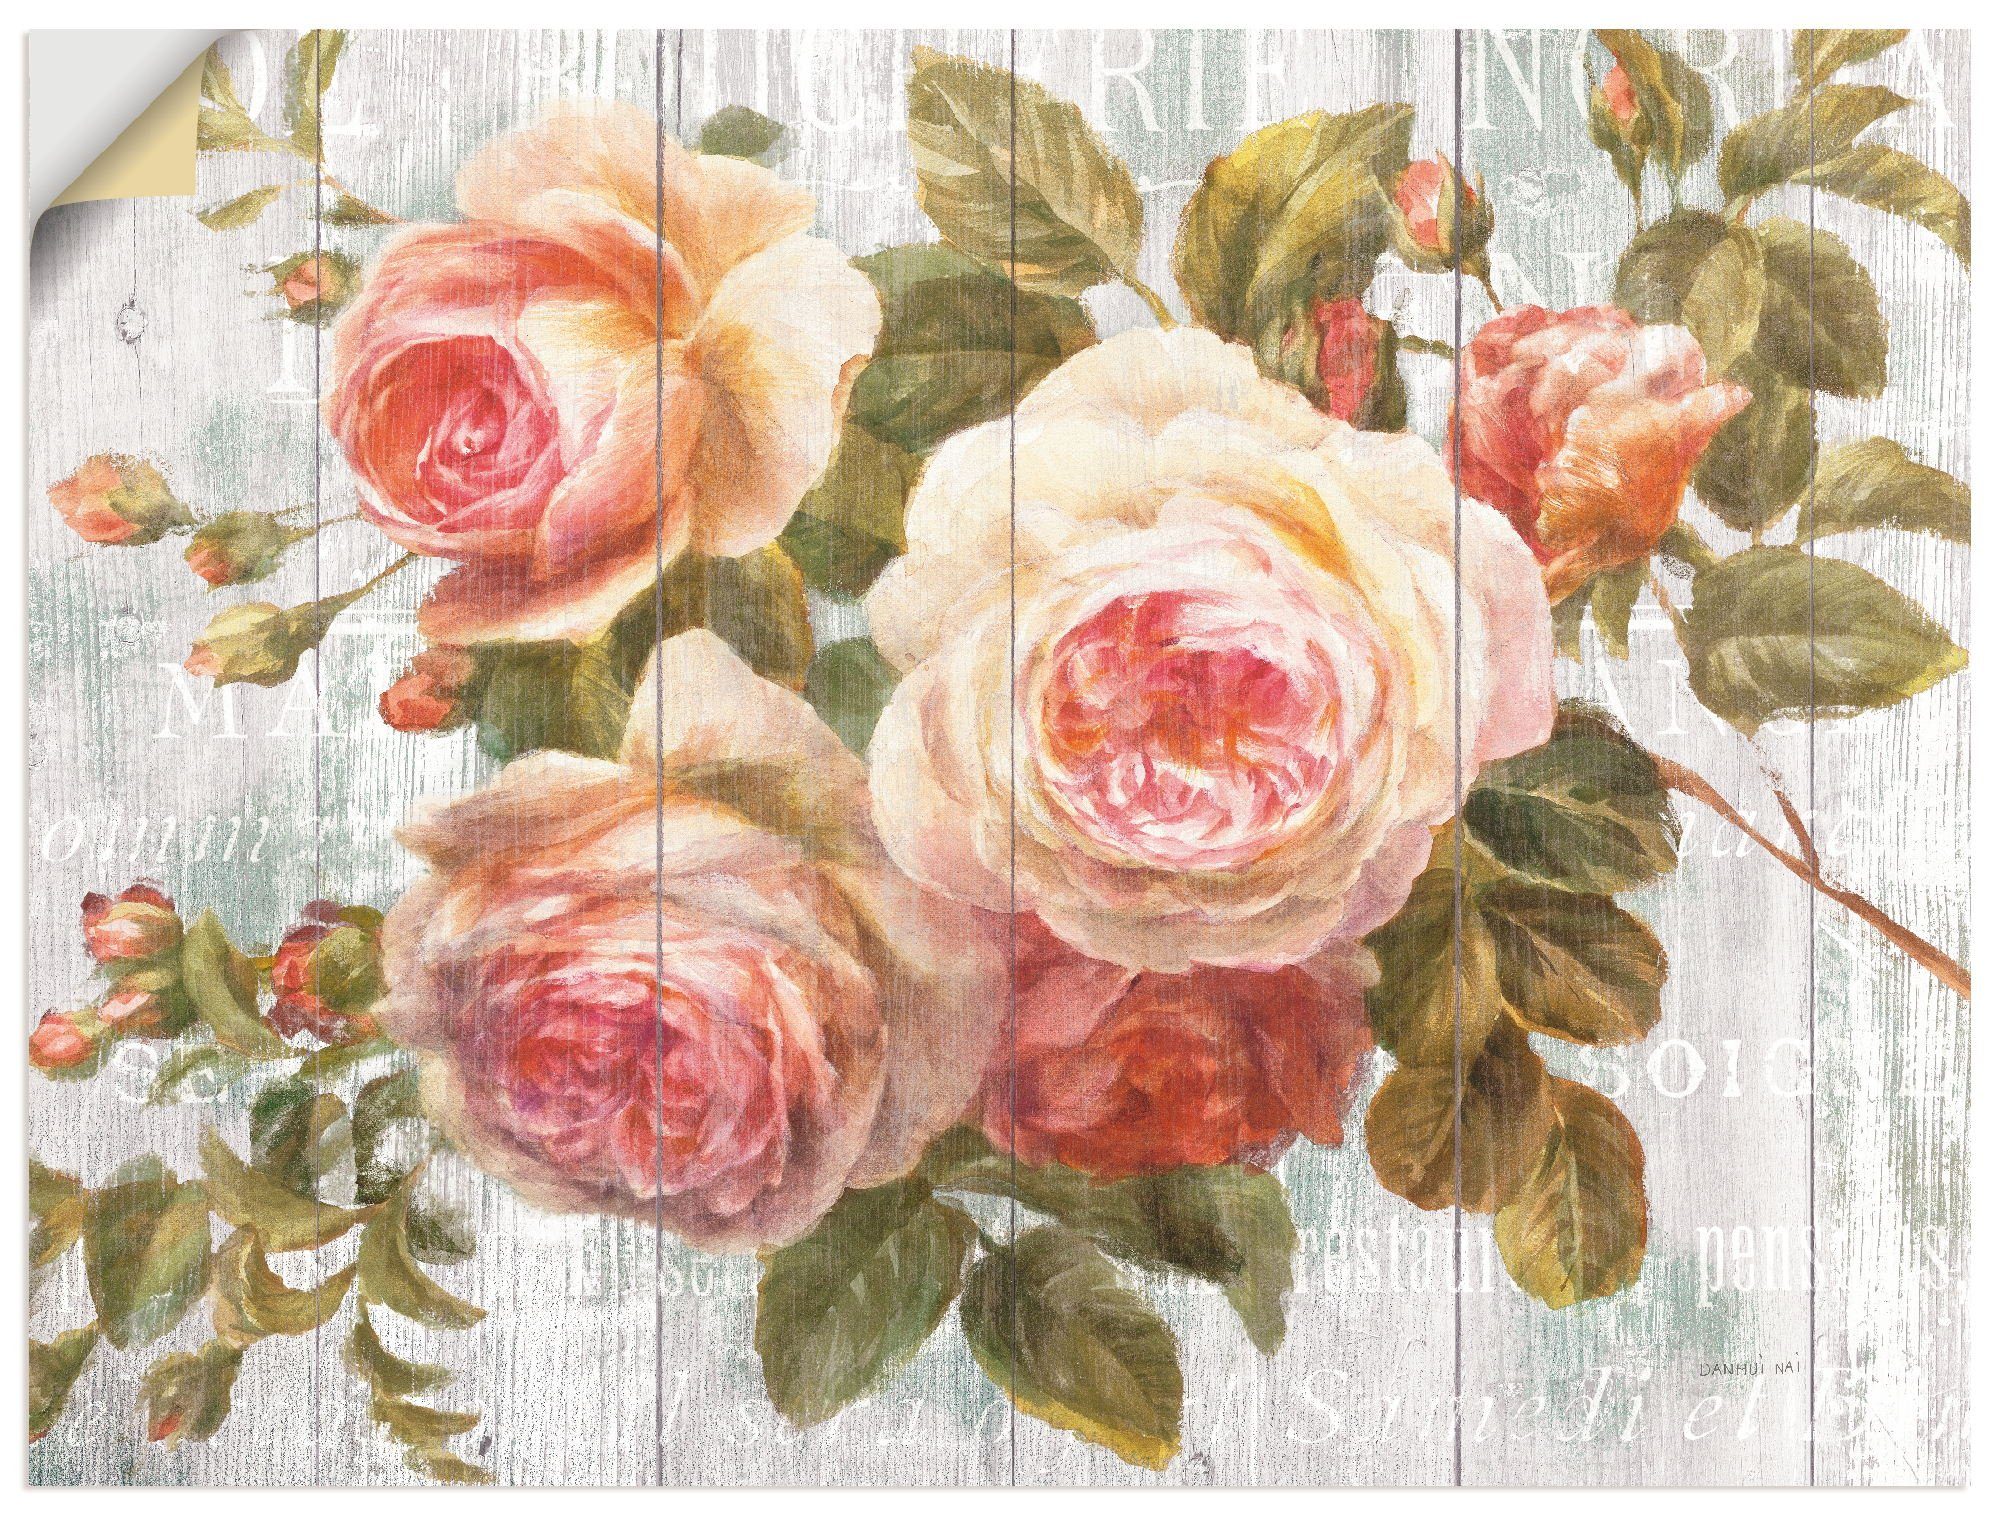 Artland Artprint Vintage rozen op hout in vele afmetingen & productsoorten -artprint op linnen, poster, muursticker / wandfolie ook geschikt voor de badkamer (1 stuk)